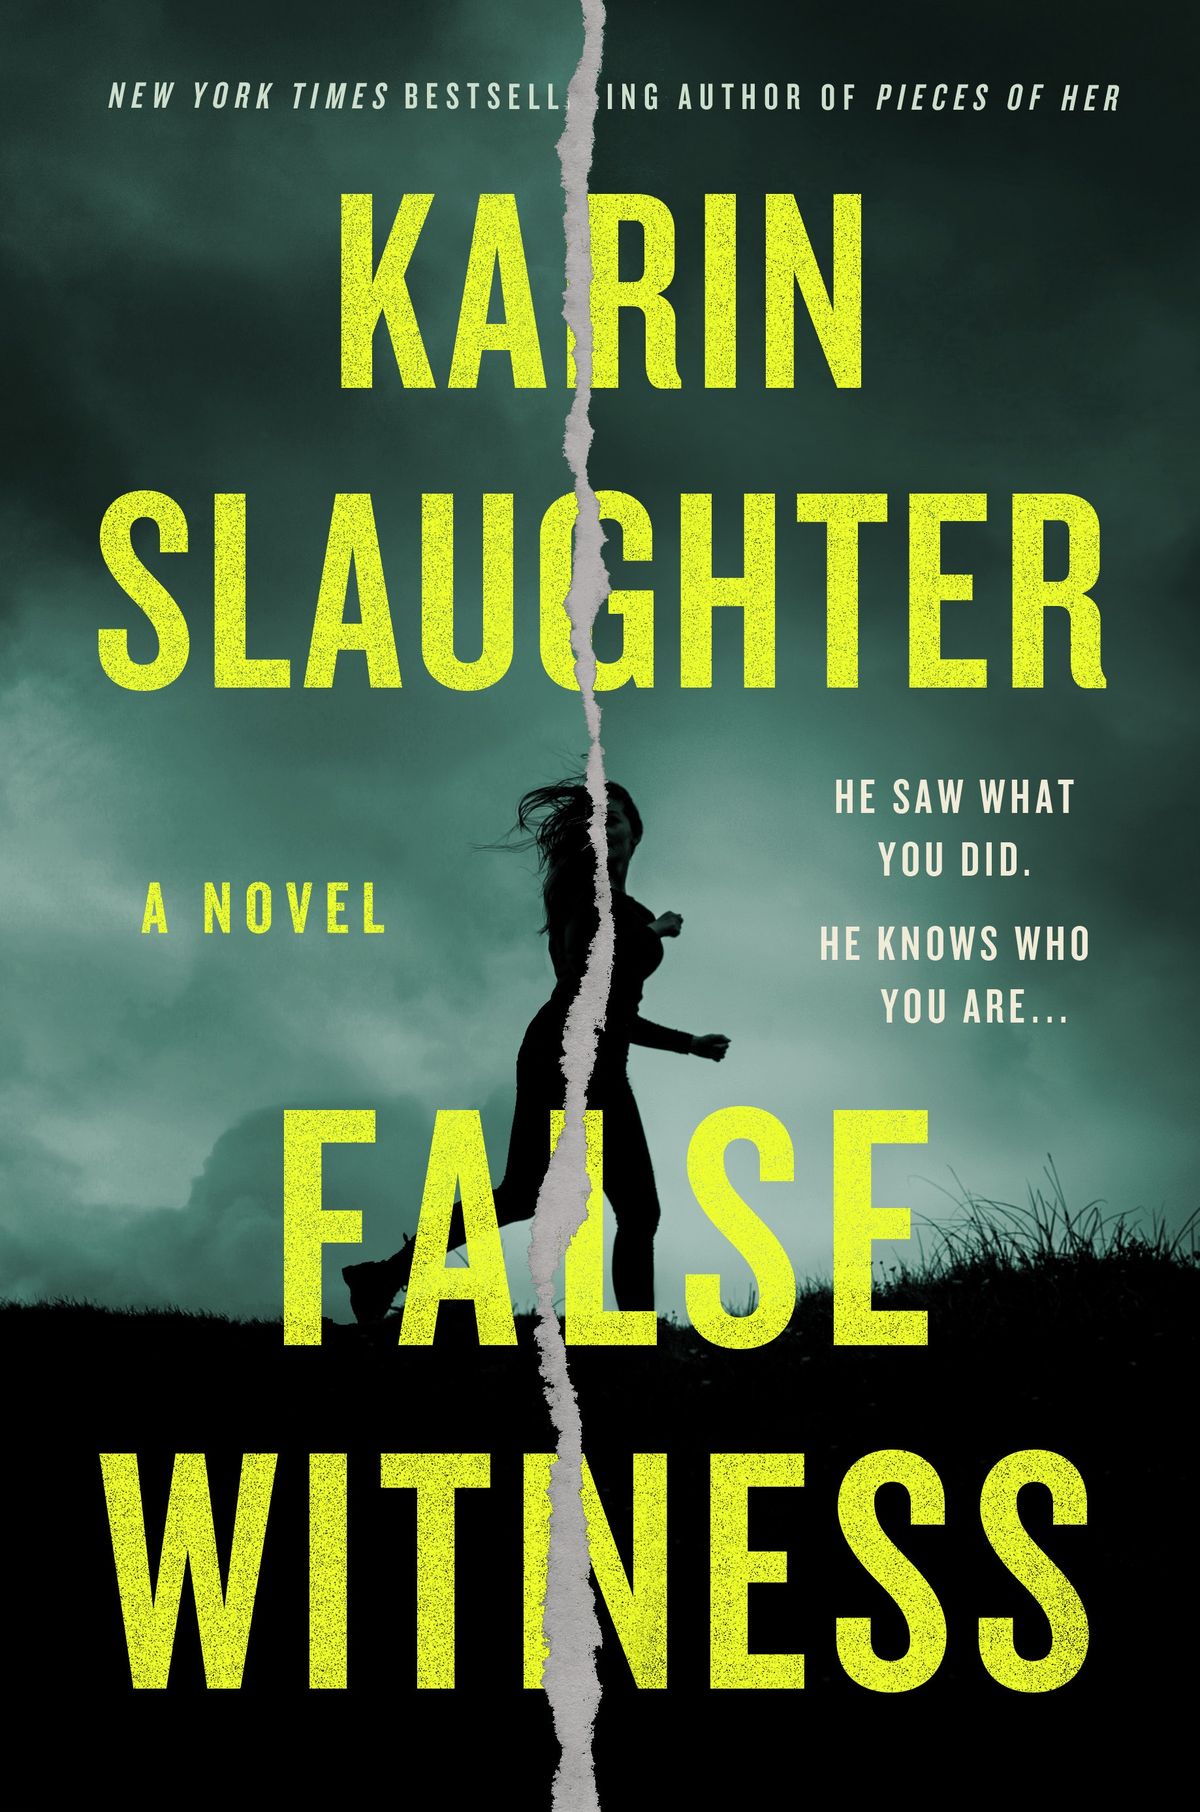 Martorul fals al lui Karin Slaughter apare luna viitoare, dar puteți începe să-l citiți acum